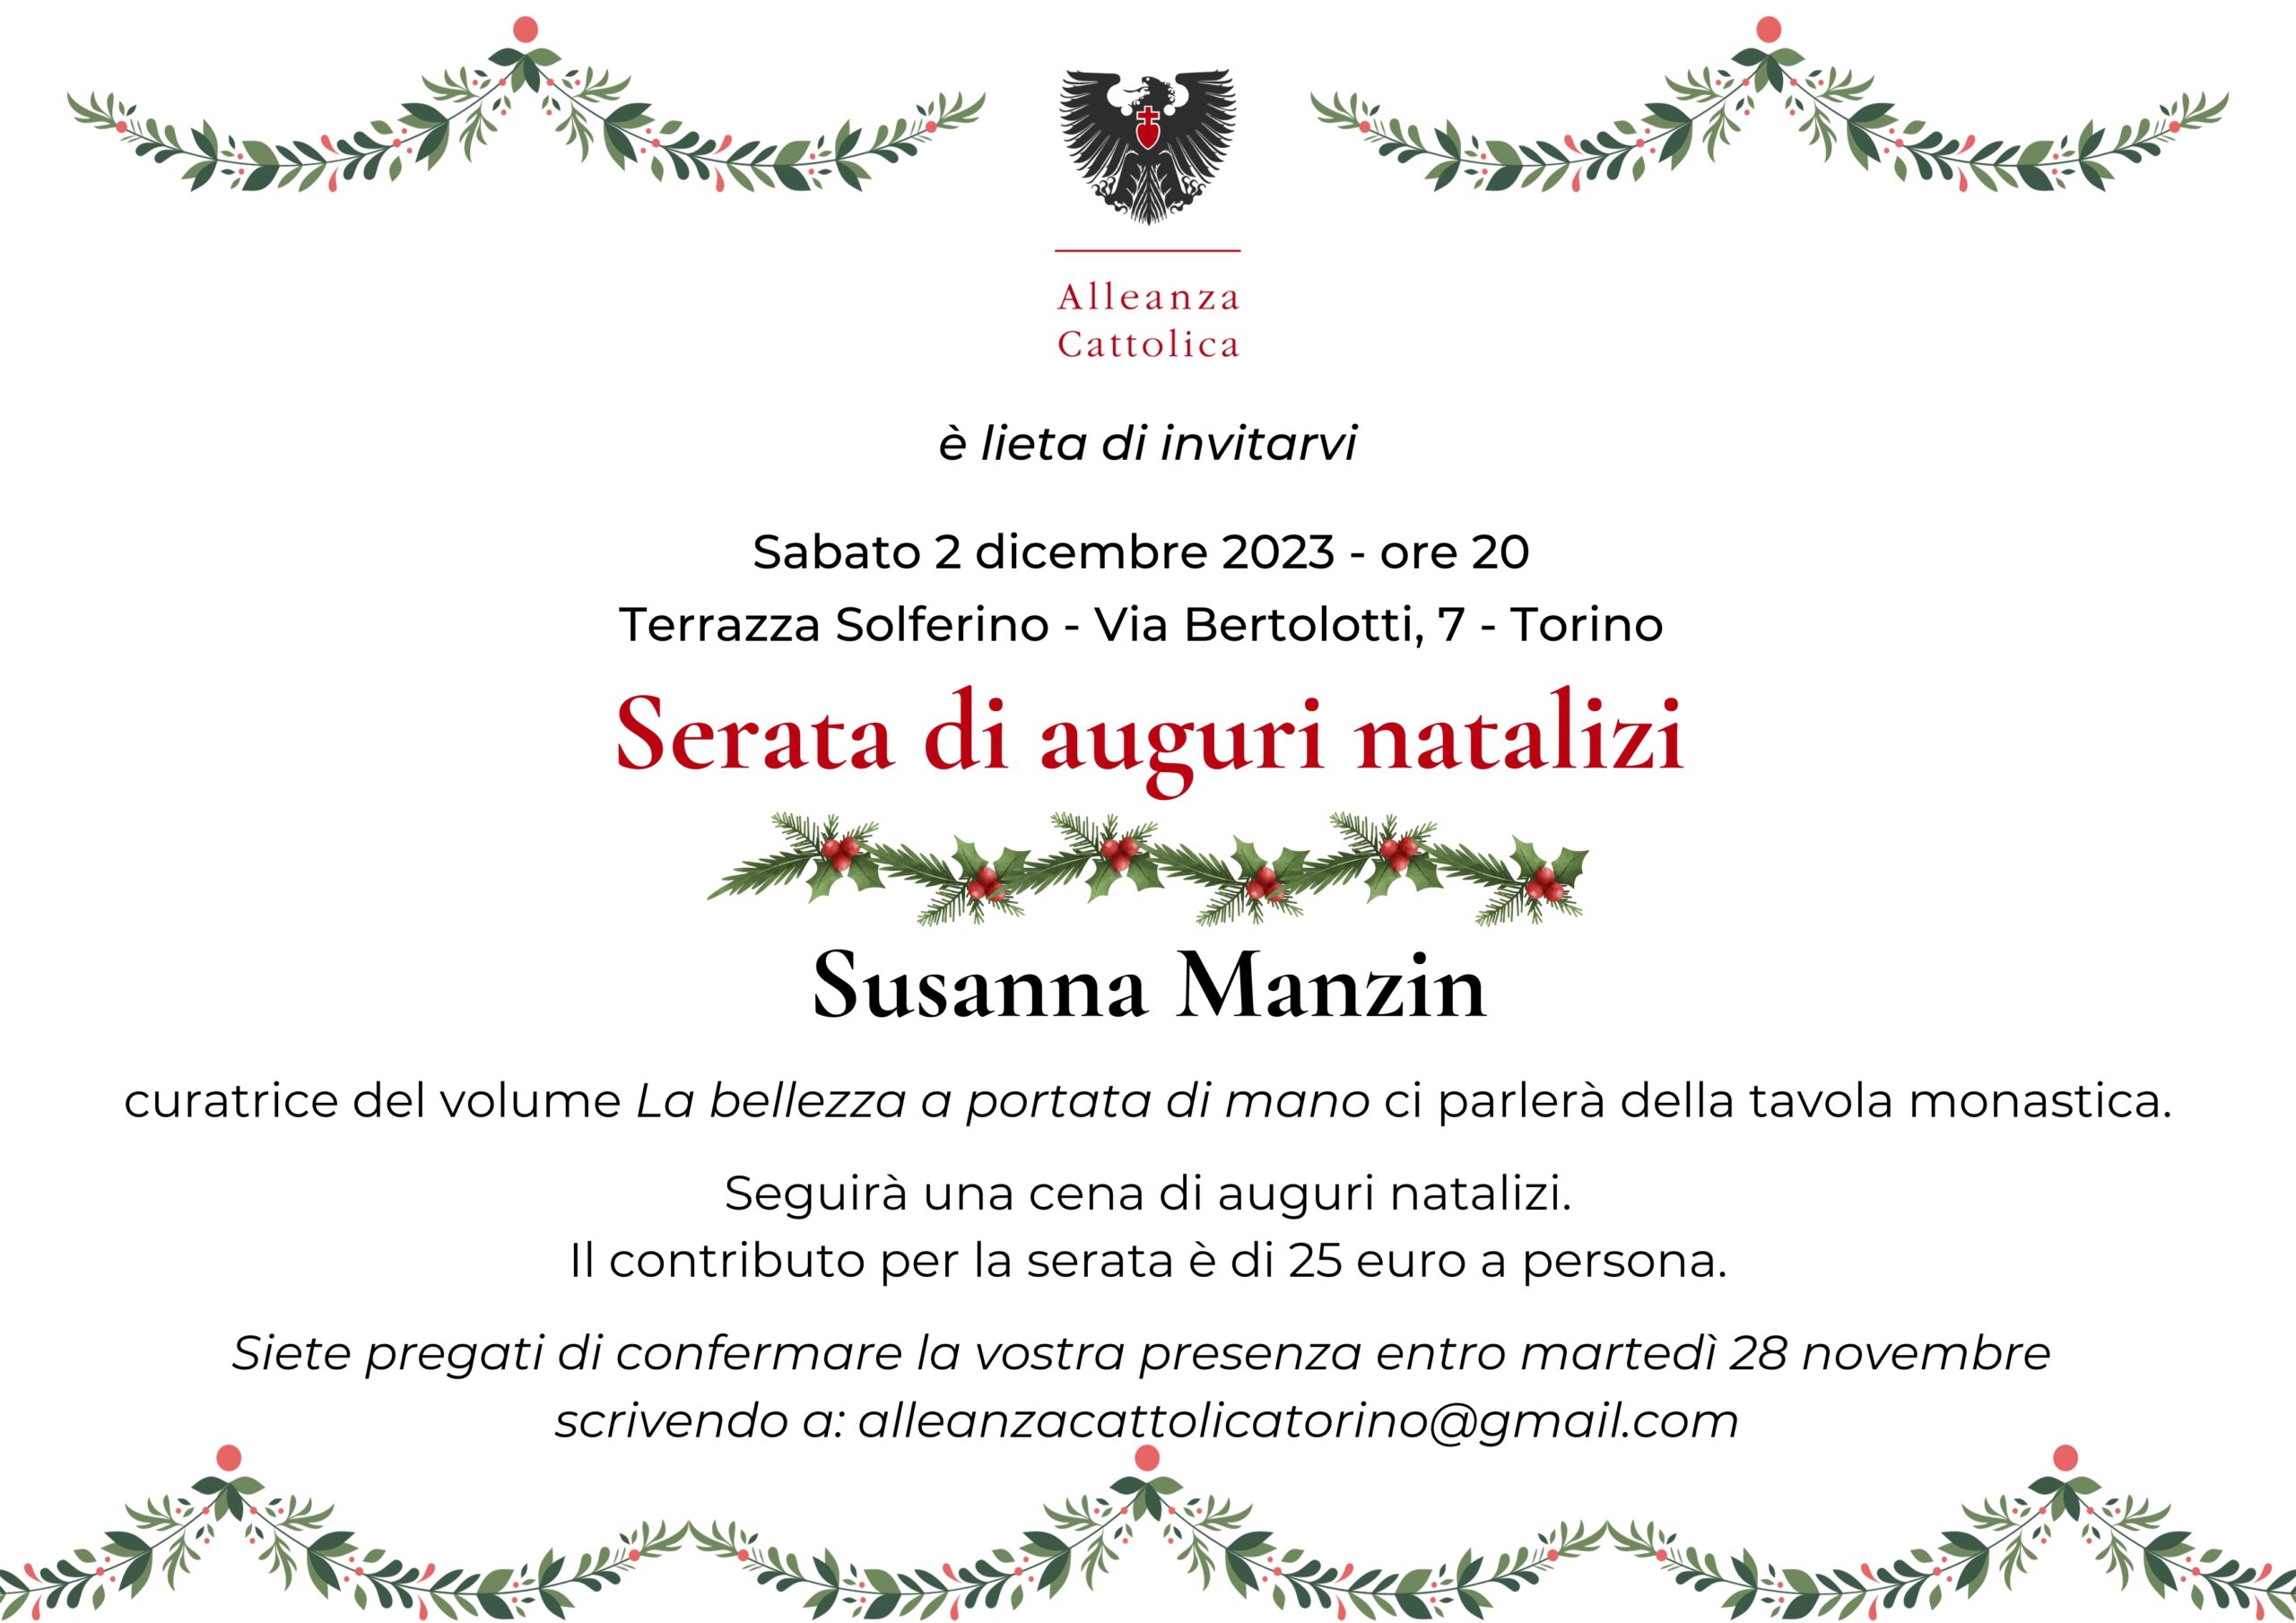 Invito cena auguri natalizi a Torino